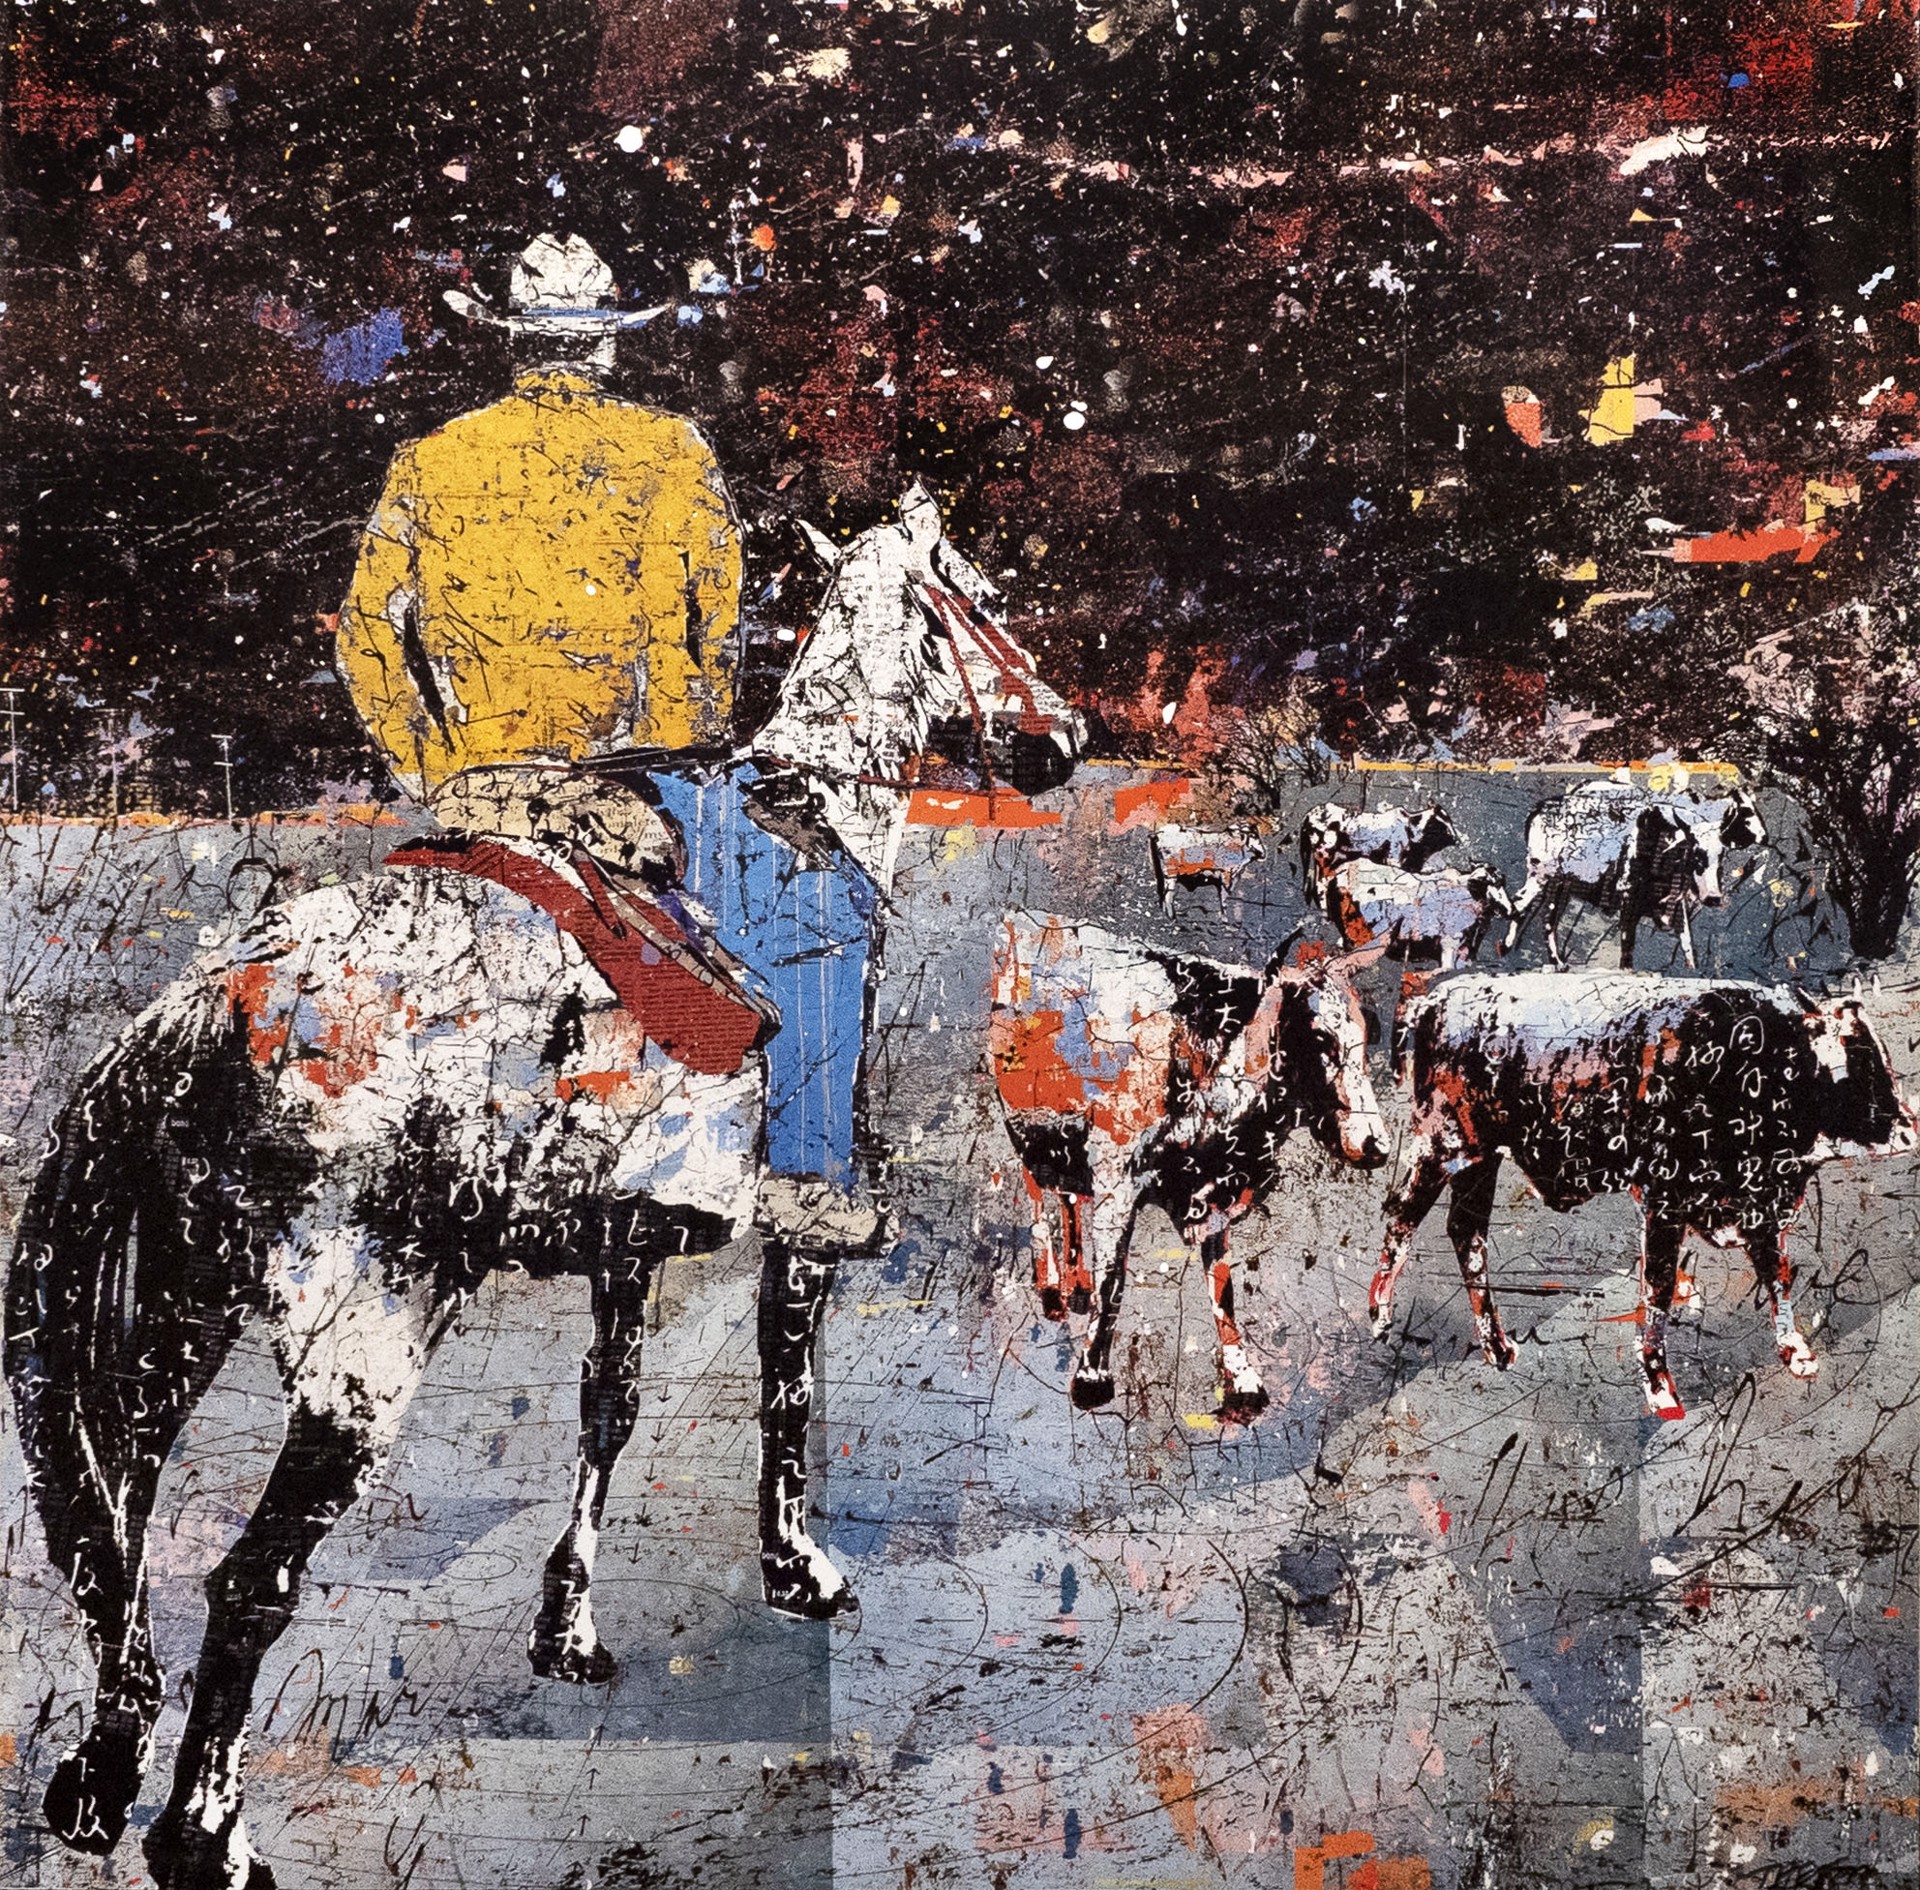 Cowboy at Night by Daryl Thetford